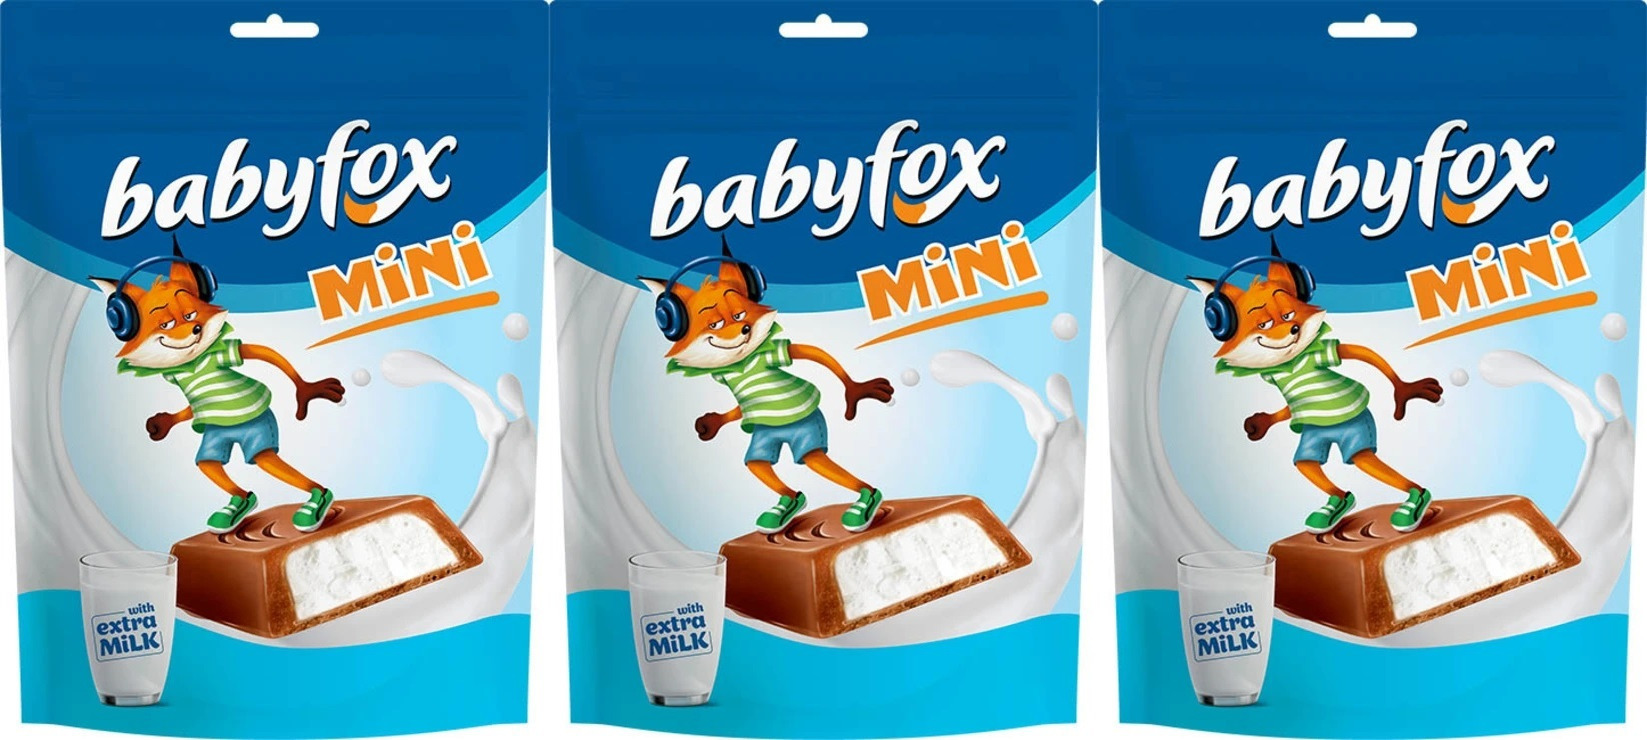 Babyfox конфеты Mini